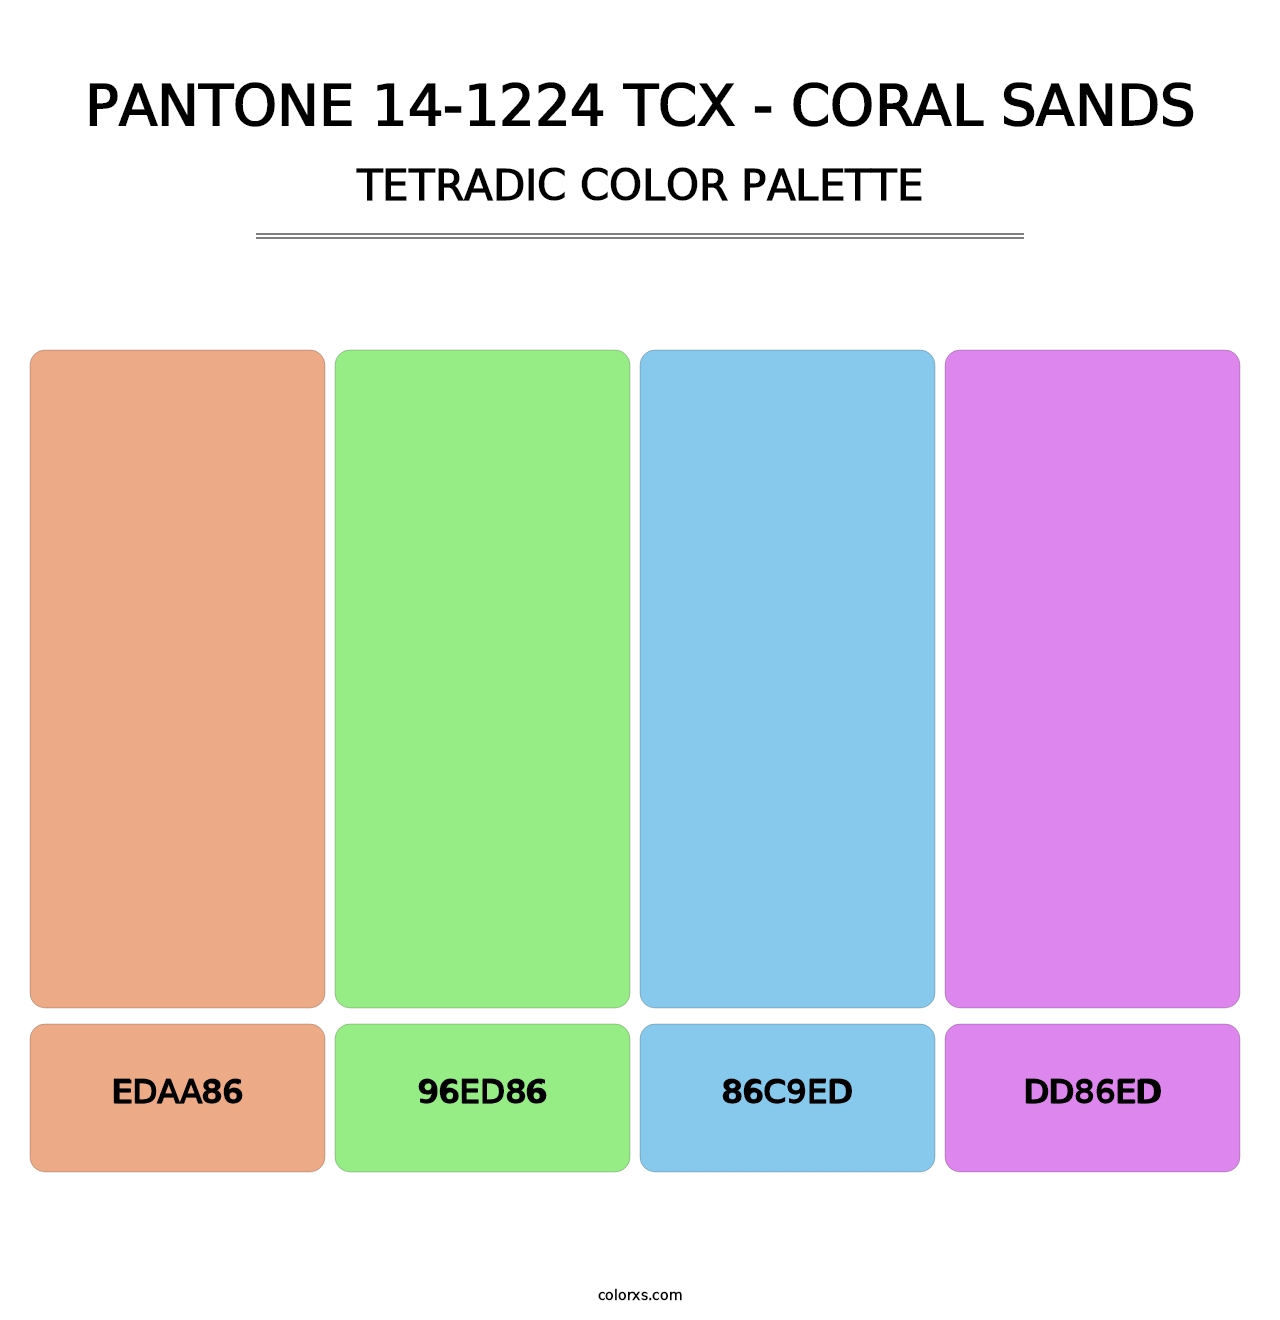 PANTONE 14-1224 TCX - Coral Sands - Tetradic Color Palette